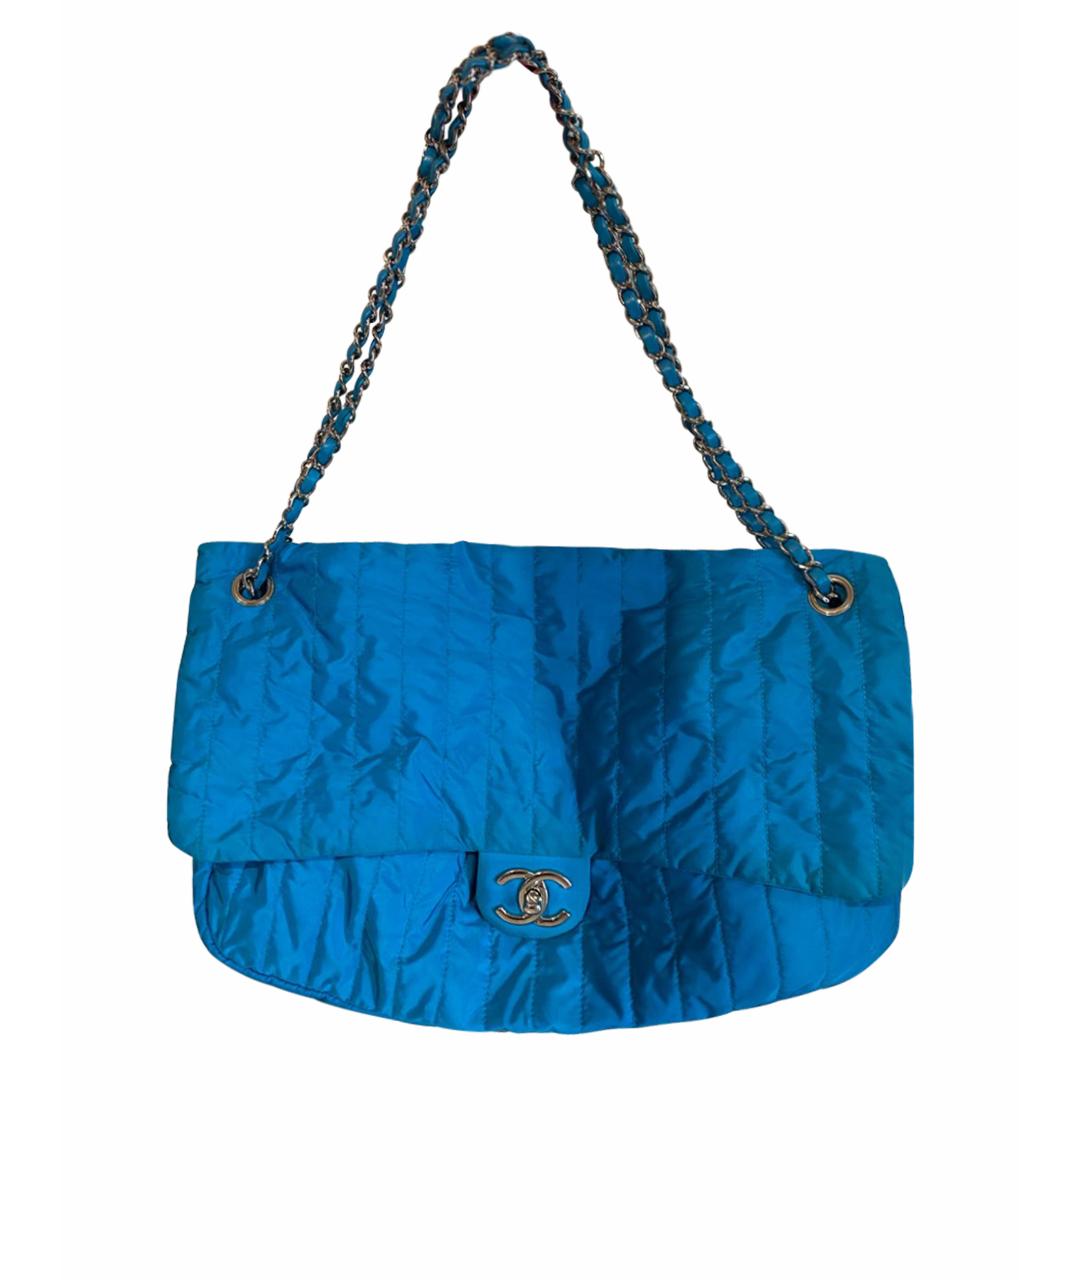 CHANEL Голубая тканевая сумка через плечо, фото 1